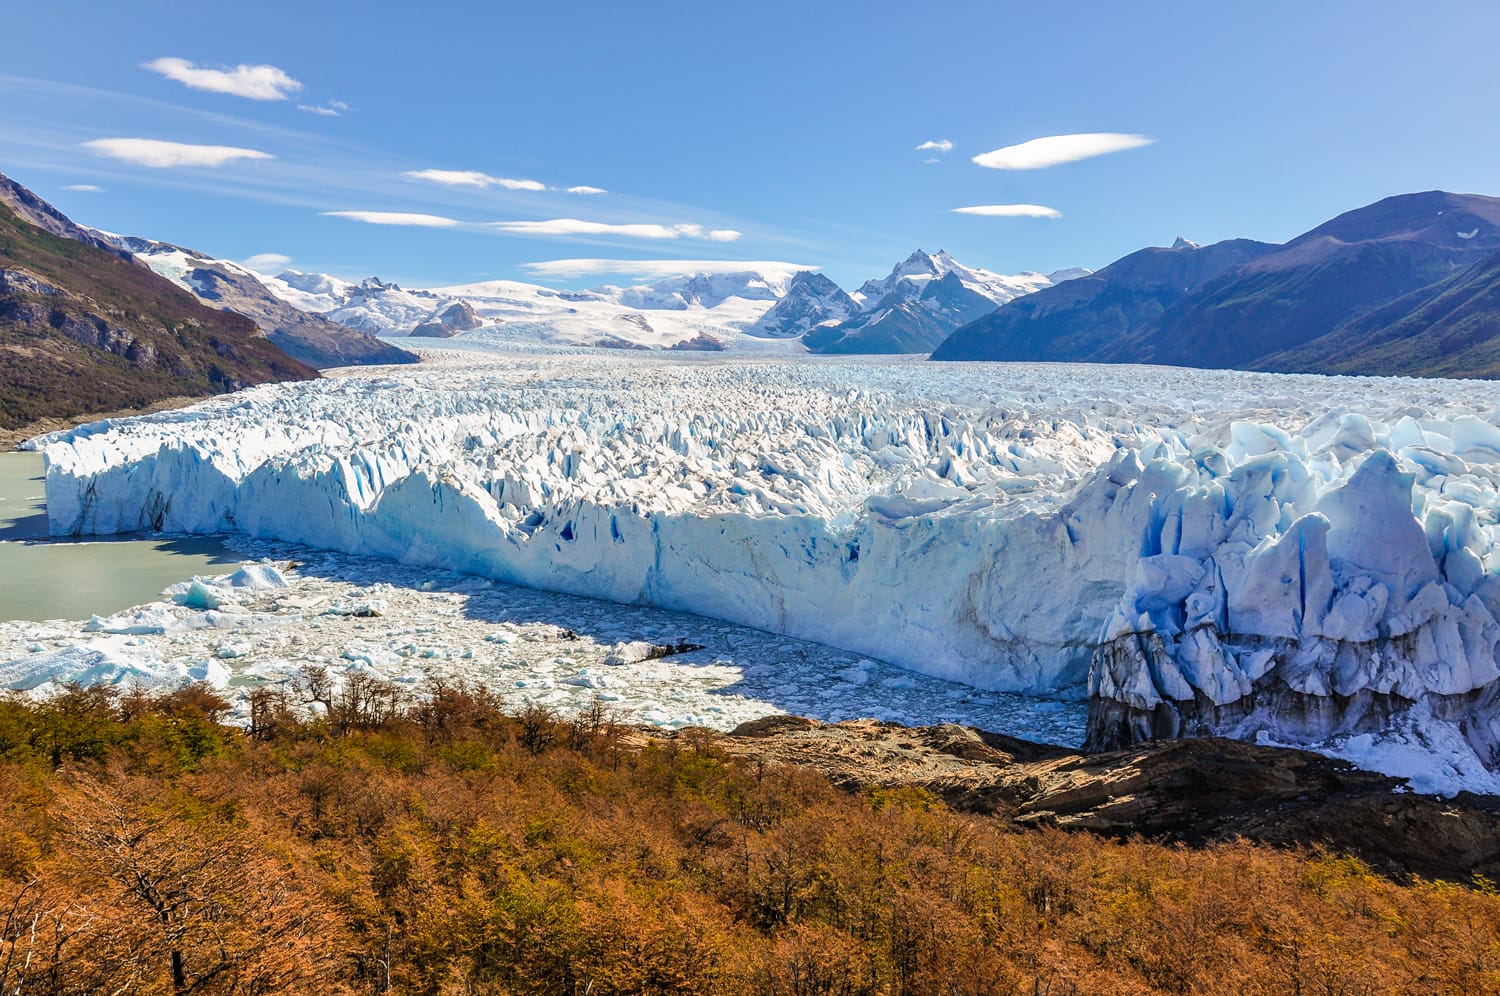 Panoramic view at the Perito Moreno Glacier, Patagonia, Argentina